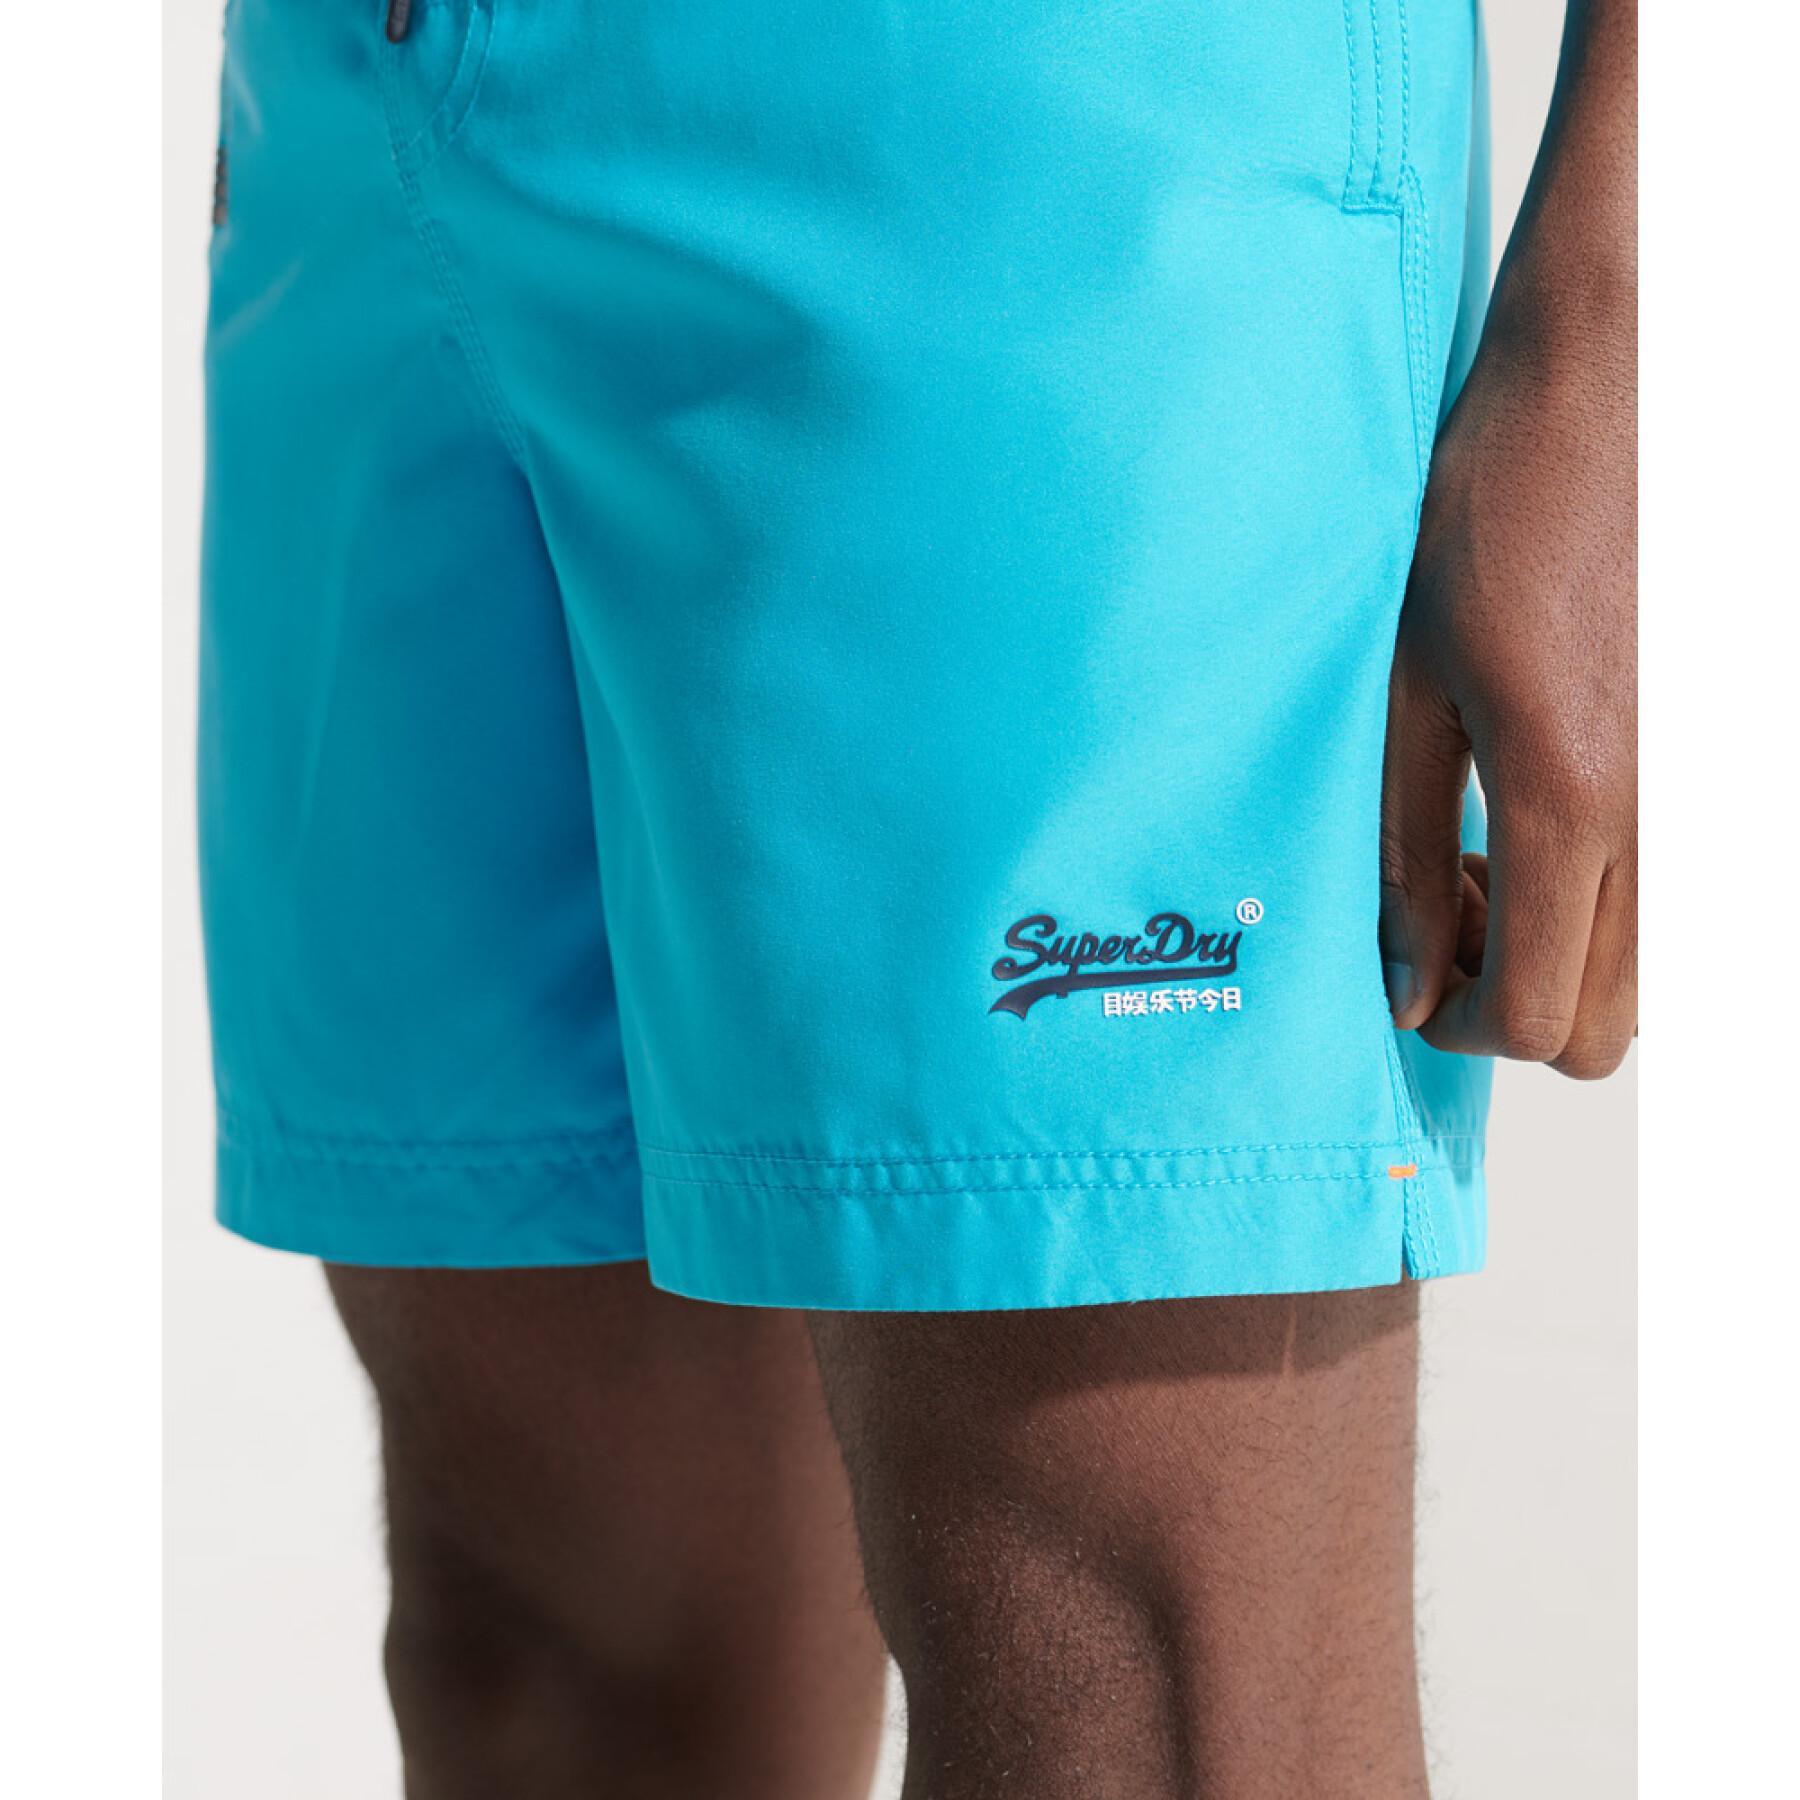 Pantalones cortos de baño Superdry Waterpolo